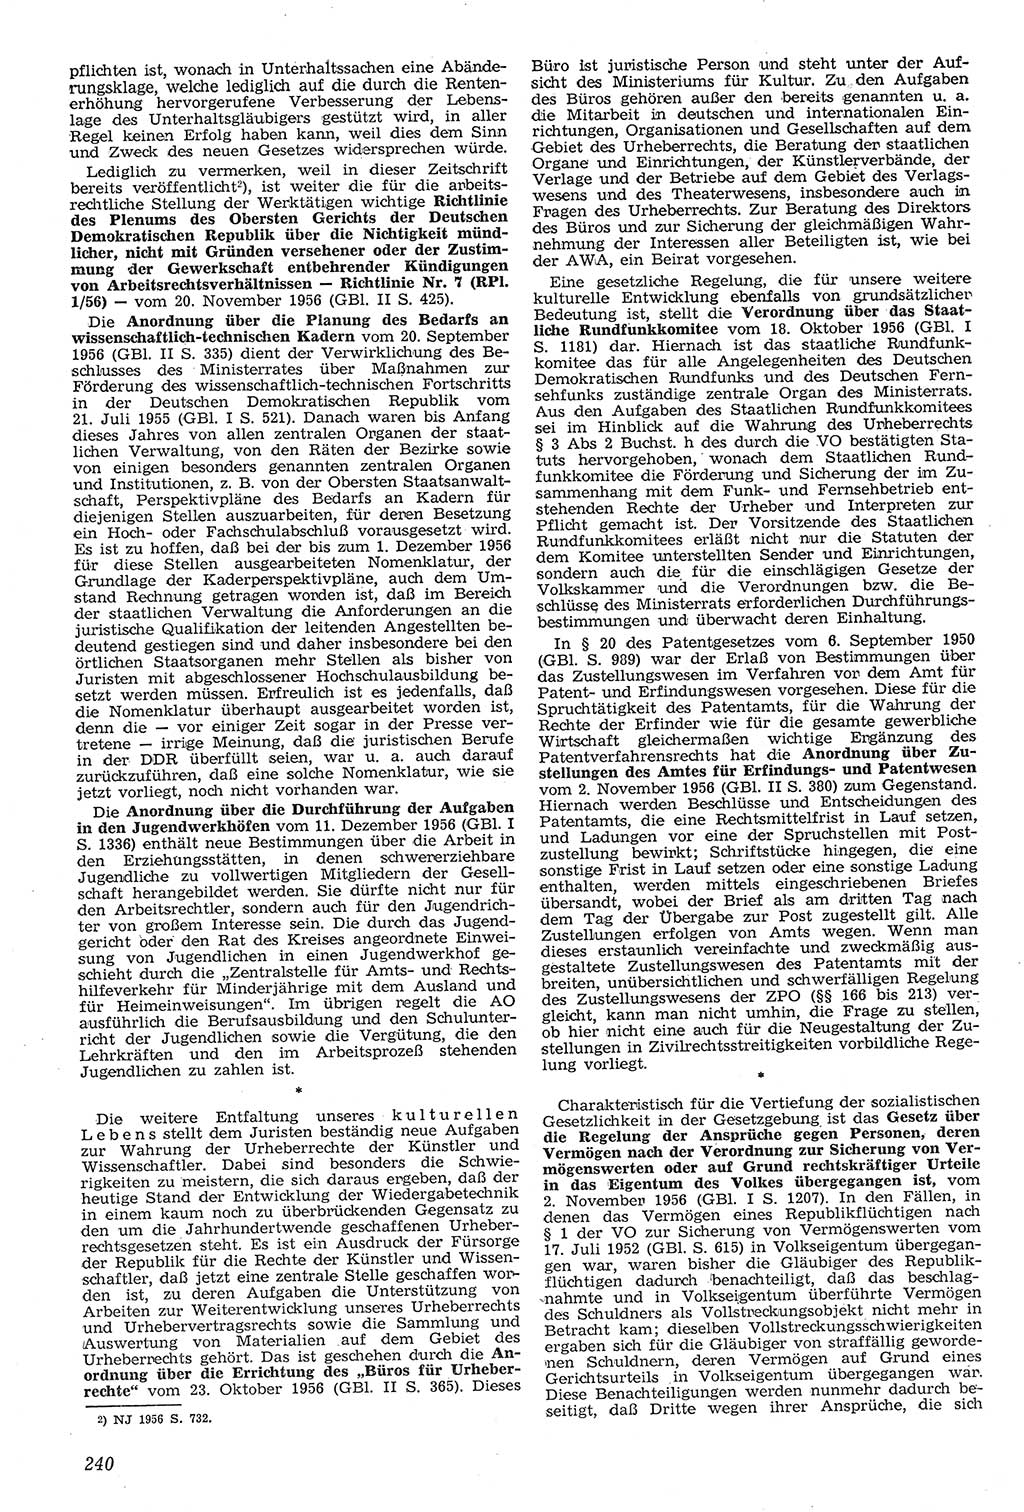 Neue Justiz (NJ), Zeitschrift für Recht und Rechtswissenschaft [Deutsche Demokratische Republik (DDR)], 11. Jahrgang 1957, Seite 240 (NJ DDR 1957, S. 240)